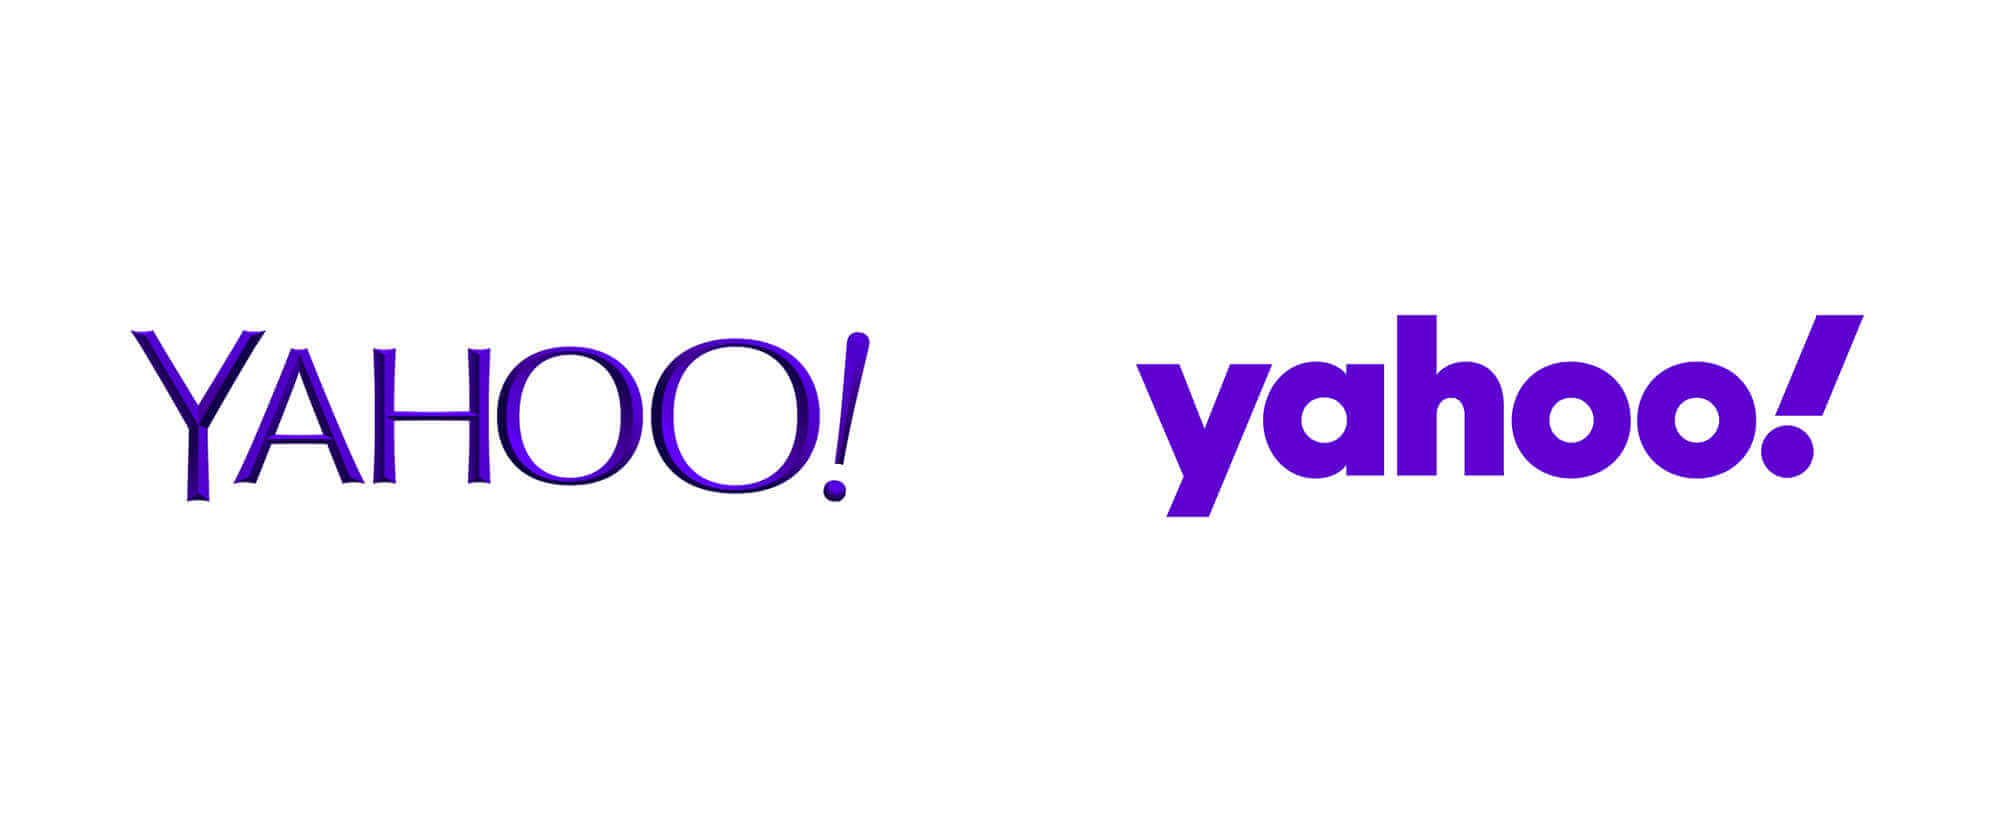 Logo yahoo 2013 y logo yahoo 2019